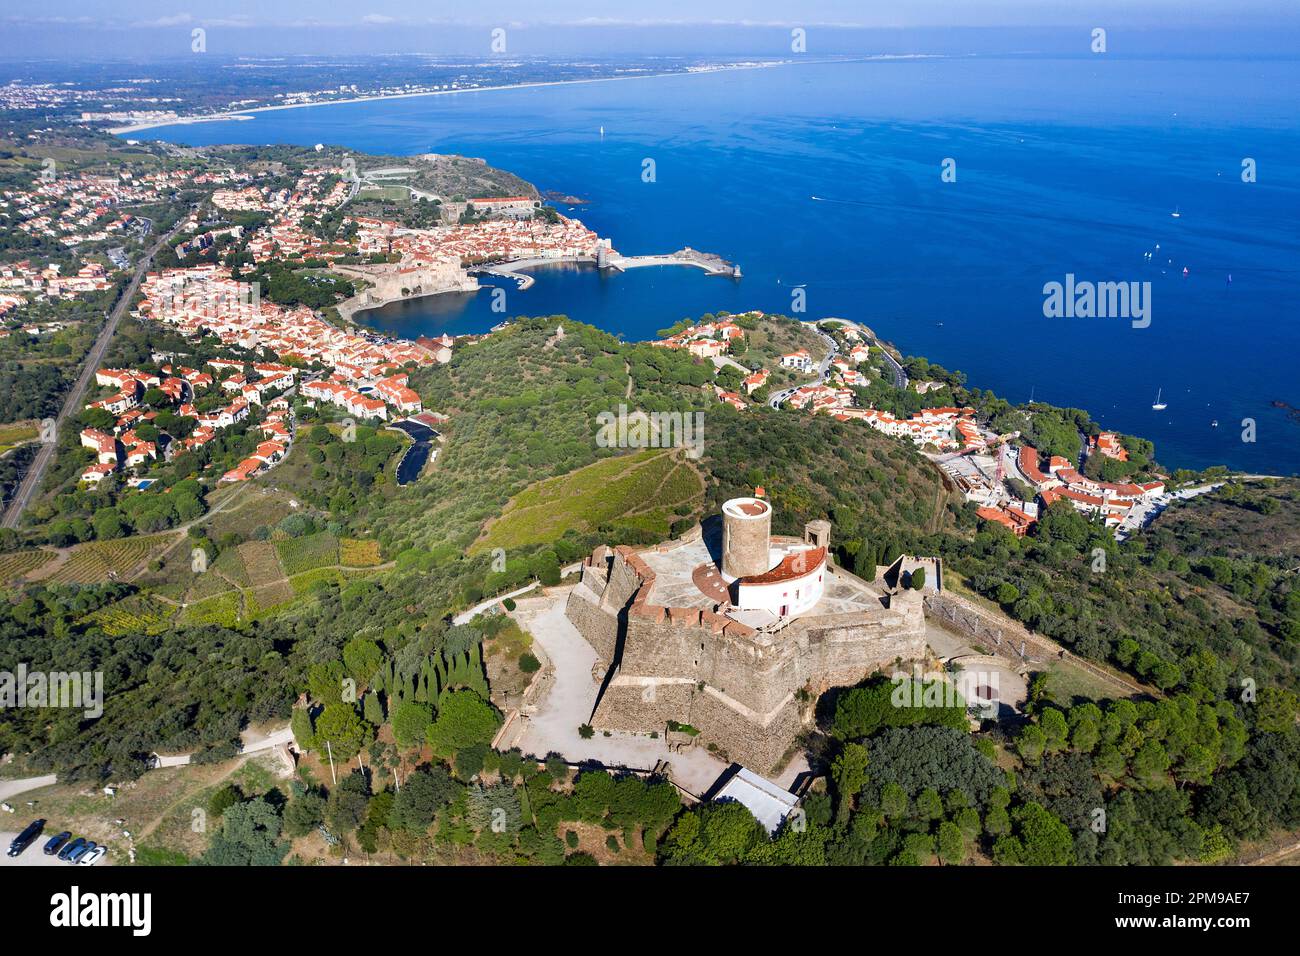 Die alte mittelalterliche Festung Saint-Elme und das Fischerdorf Collioure, Pyrénées-Orientales, Languedoc-Roussillon, Südfrankreich, Frankreich, Europa Stockfoto